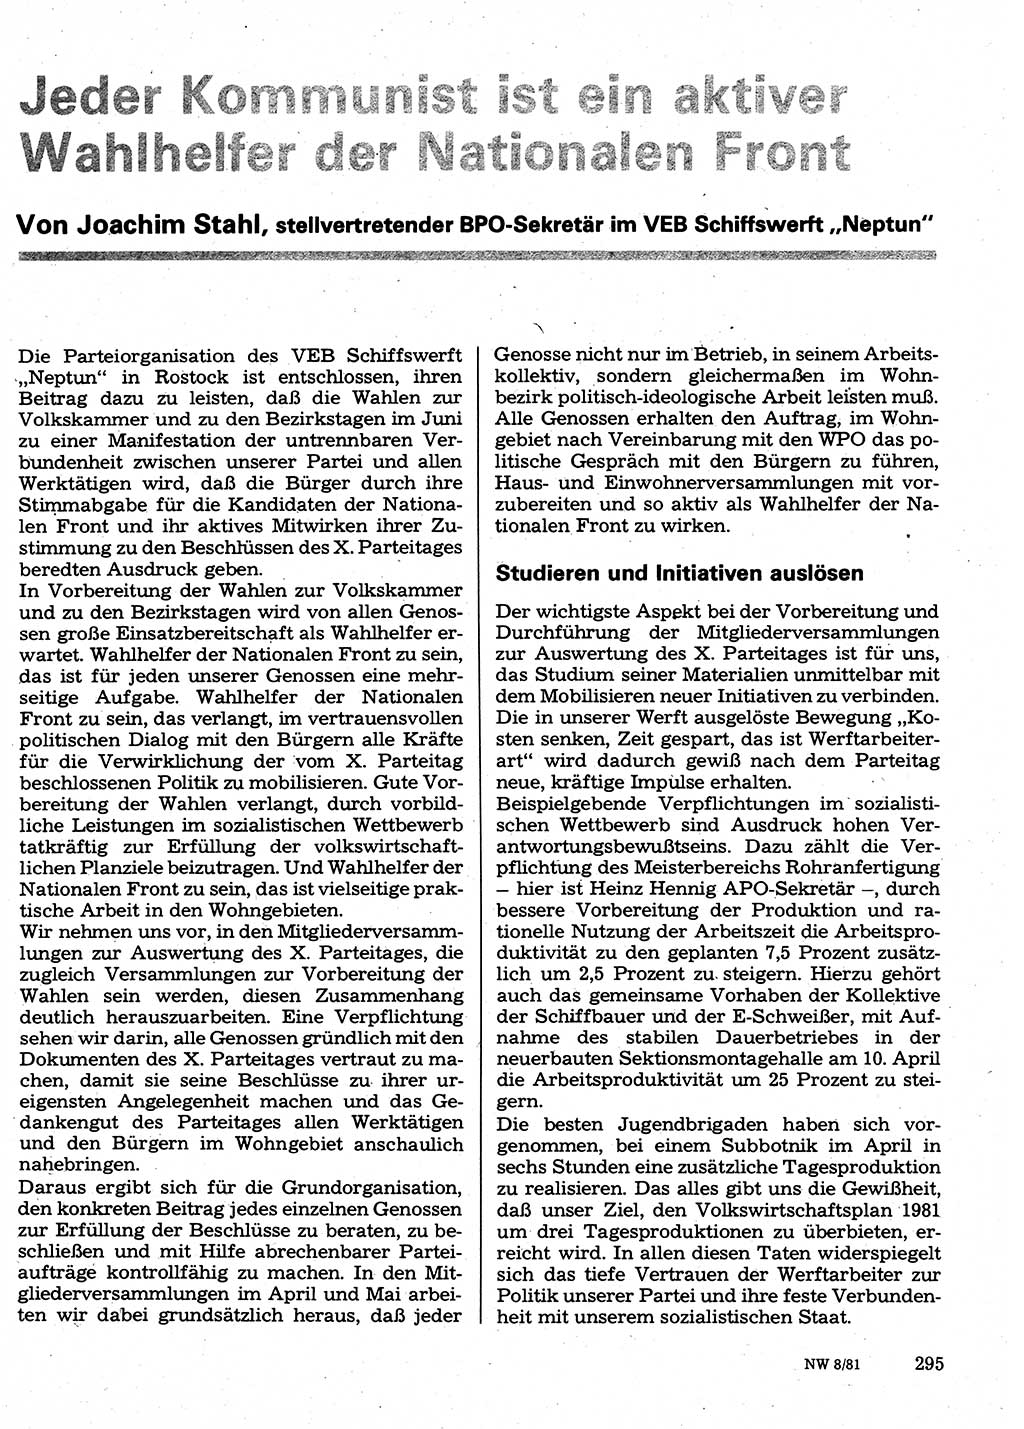 Neuer Weg (NW), Organ des Zentralkomitees (ZK) der SED (Sozialistische Einheitspartei Deutschlands) für Fragen des Parteilebens, 36. Jahrgang [Deutsche Demokratische Republik (DDR)] 1981, Seite 295 (NW ZK SED DDR 1981, S. 295)